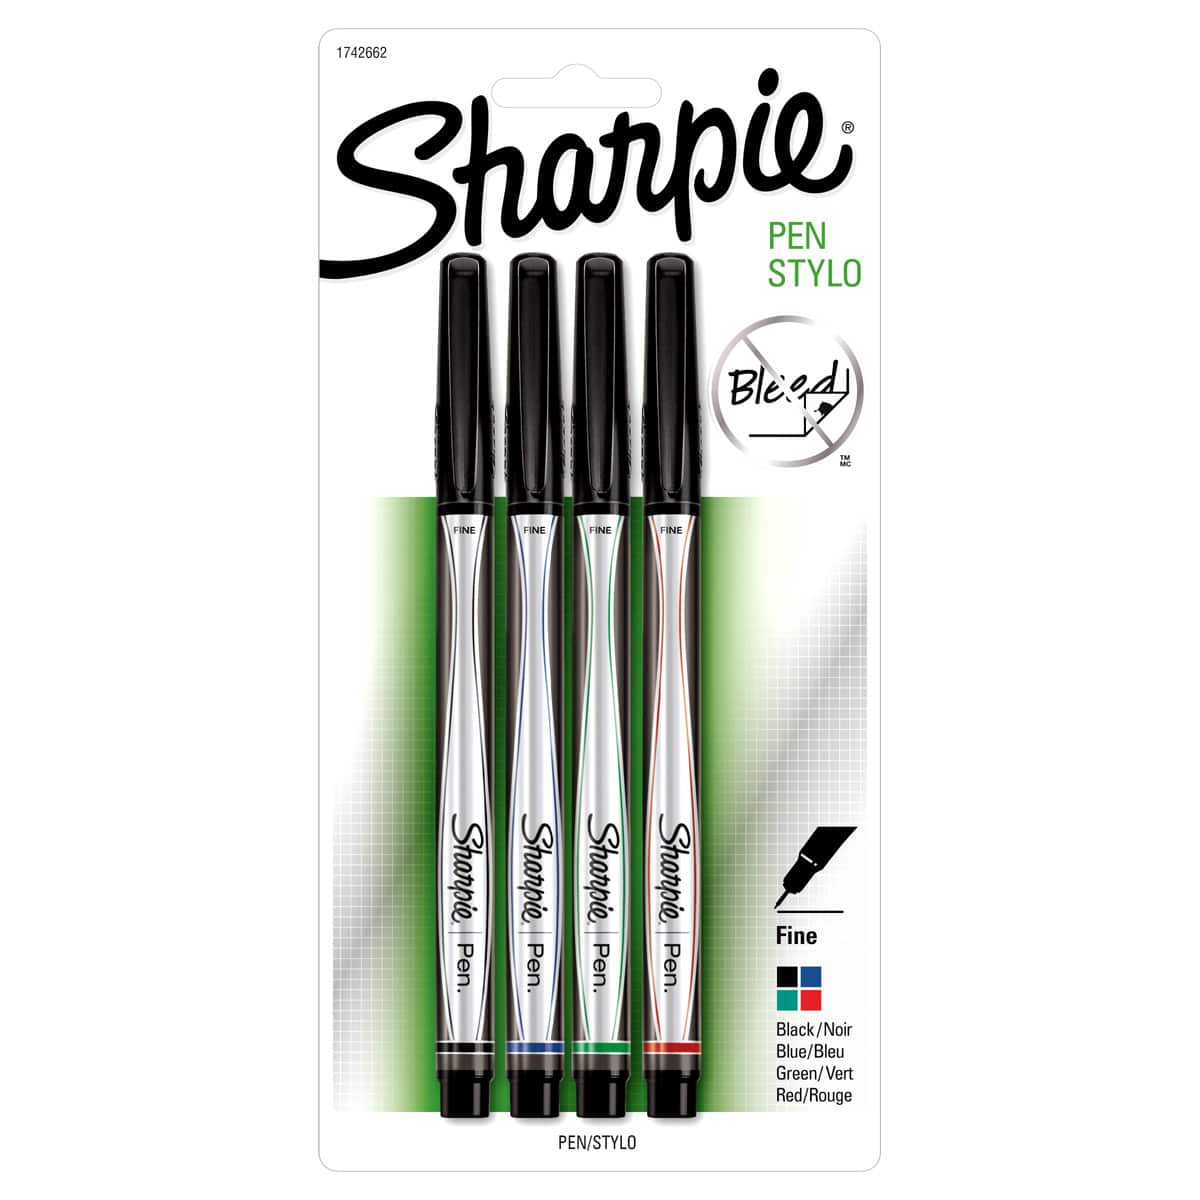 sharpie pen fine point pen